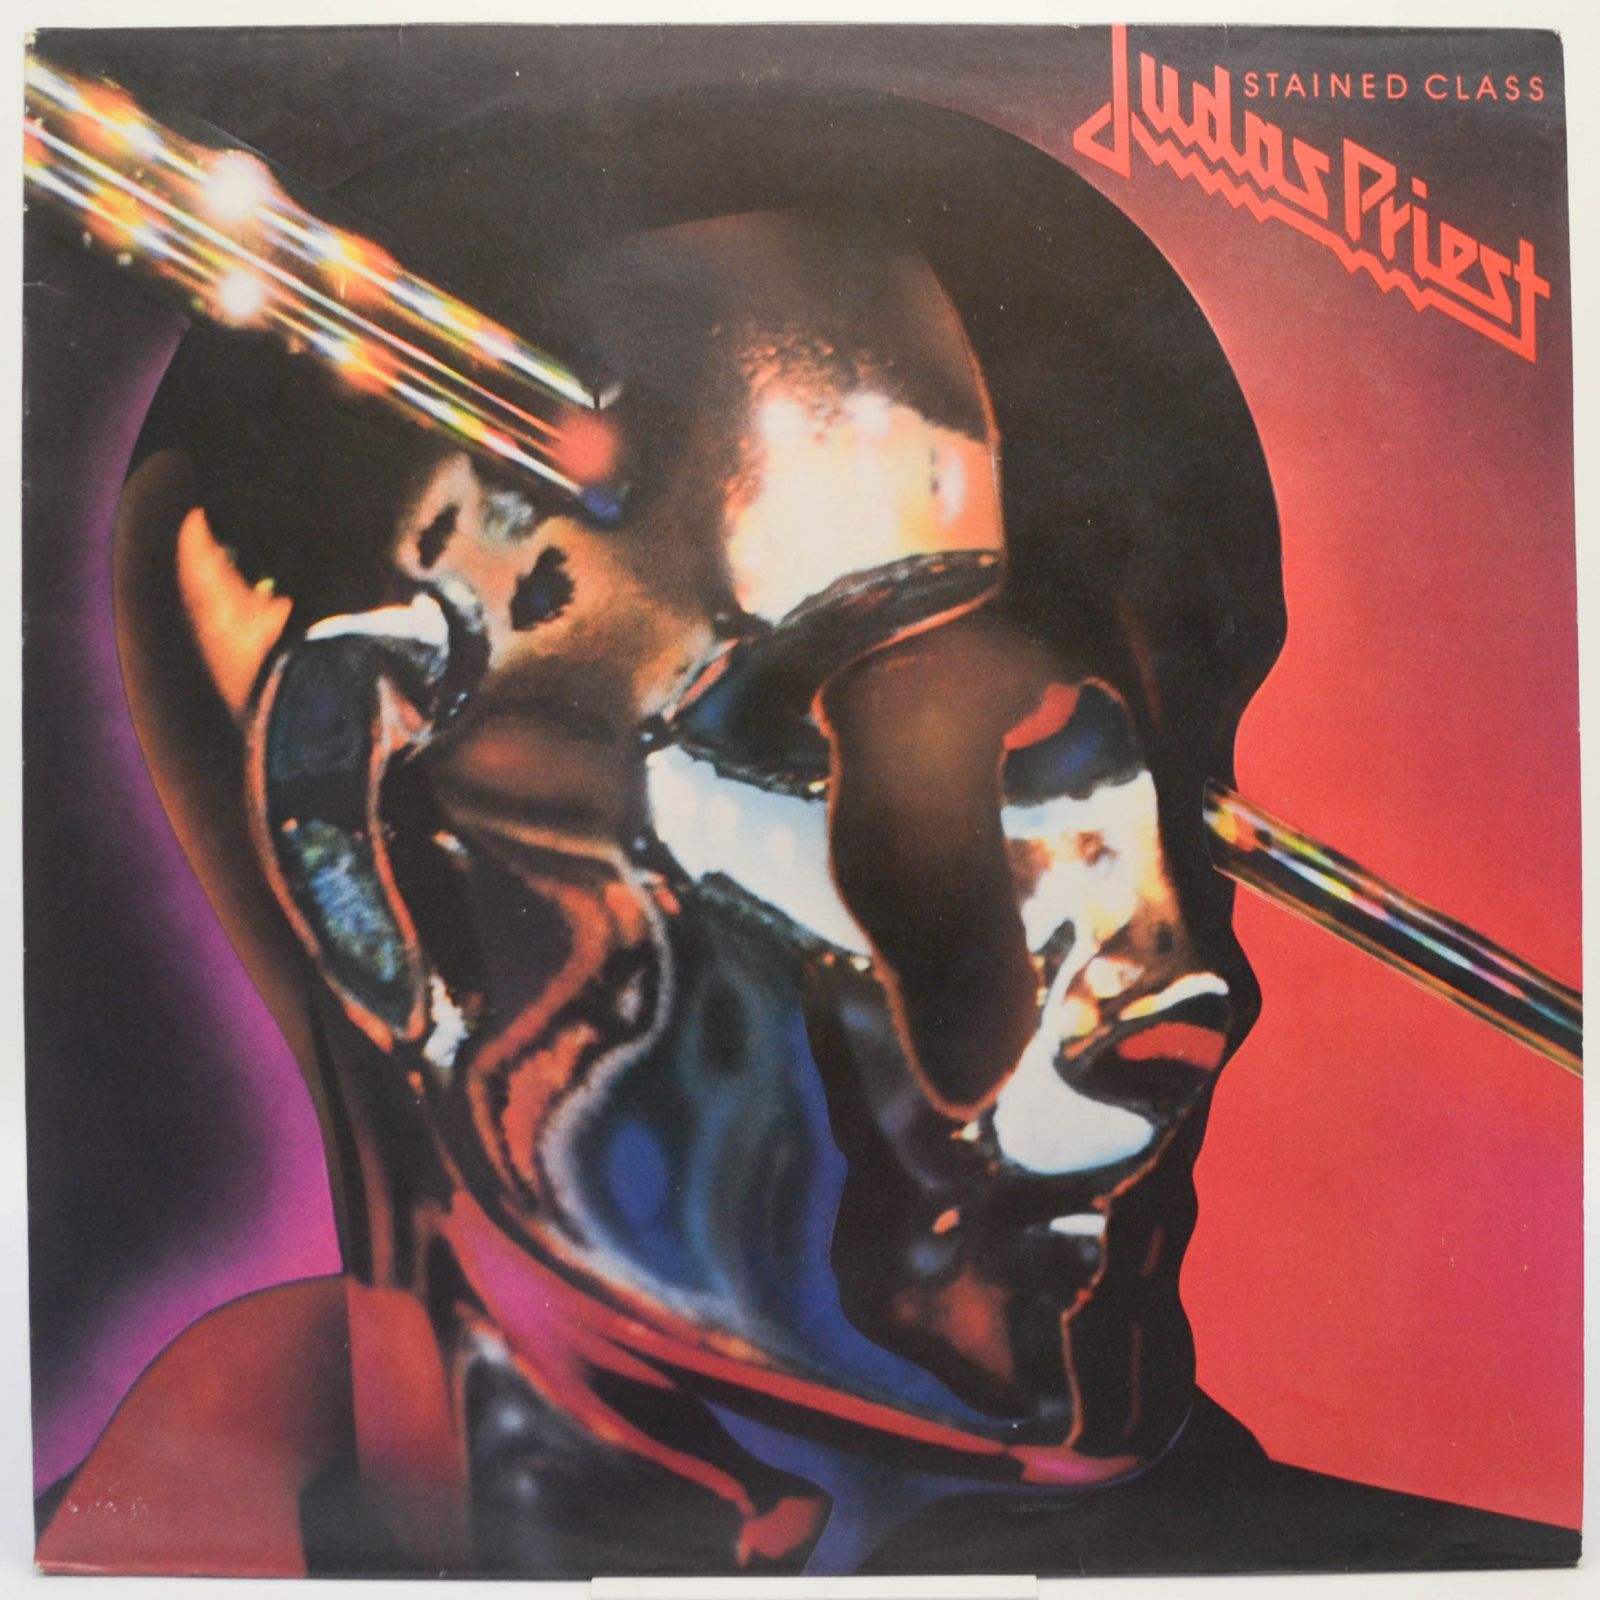 Judas Priest — Stained Class, 1978